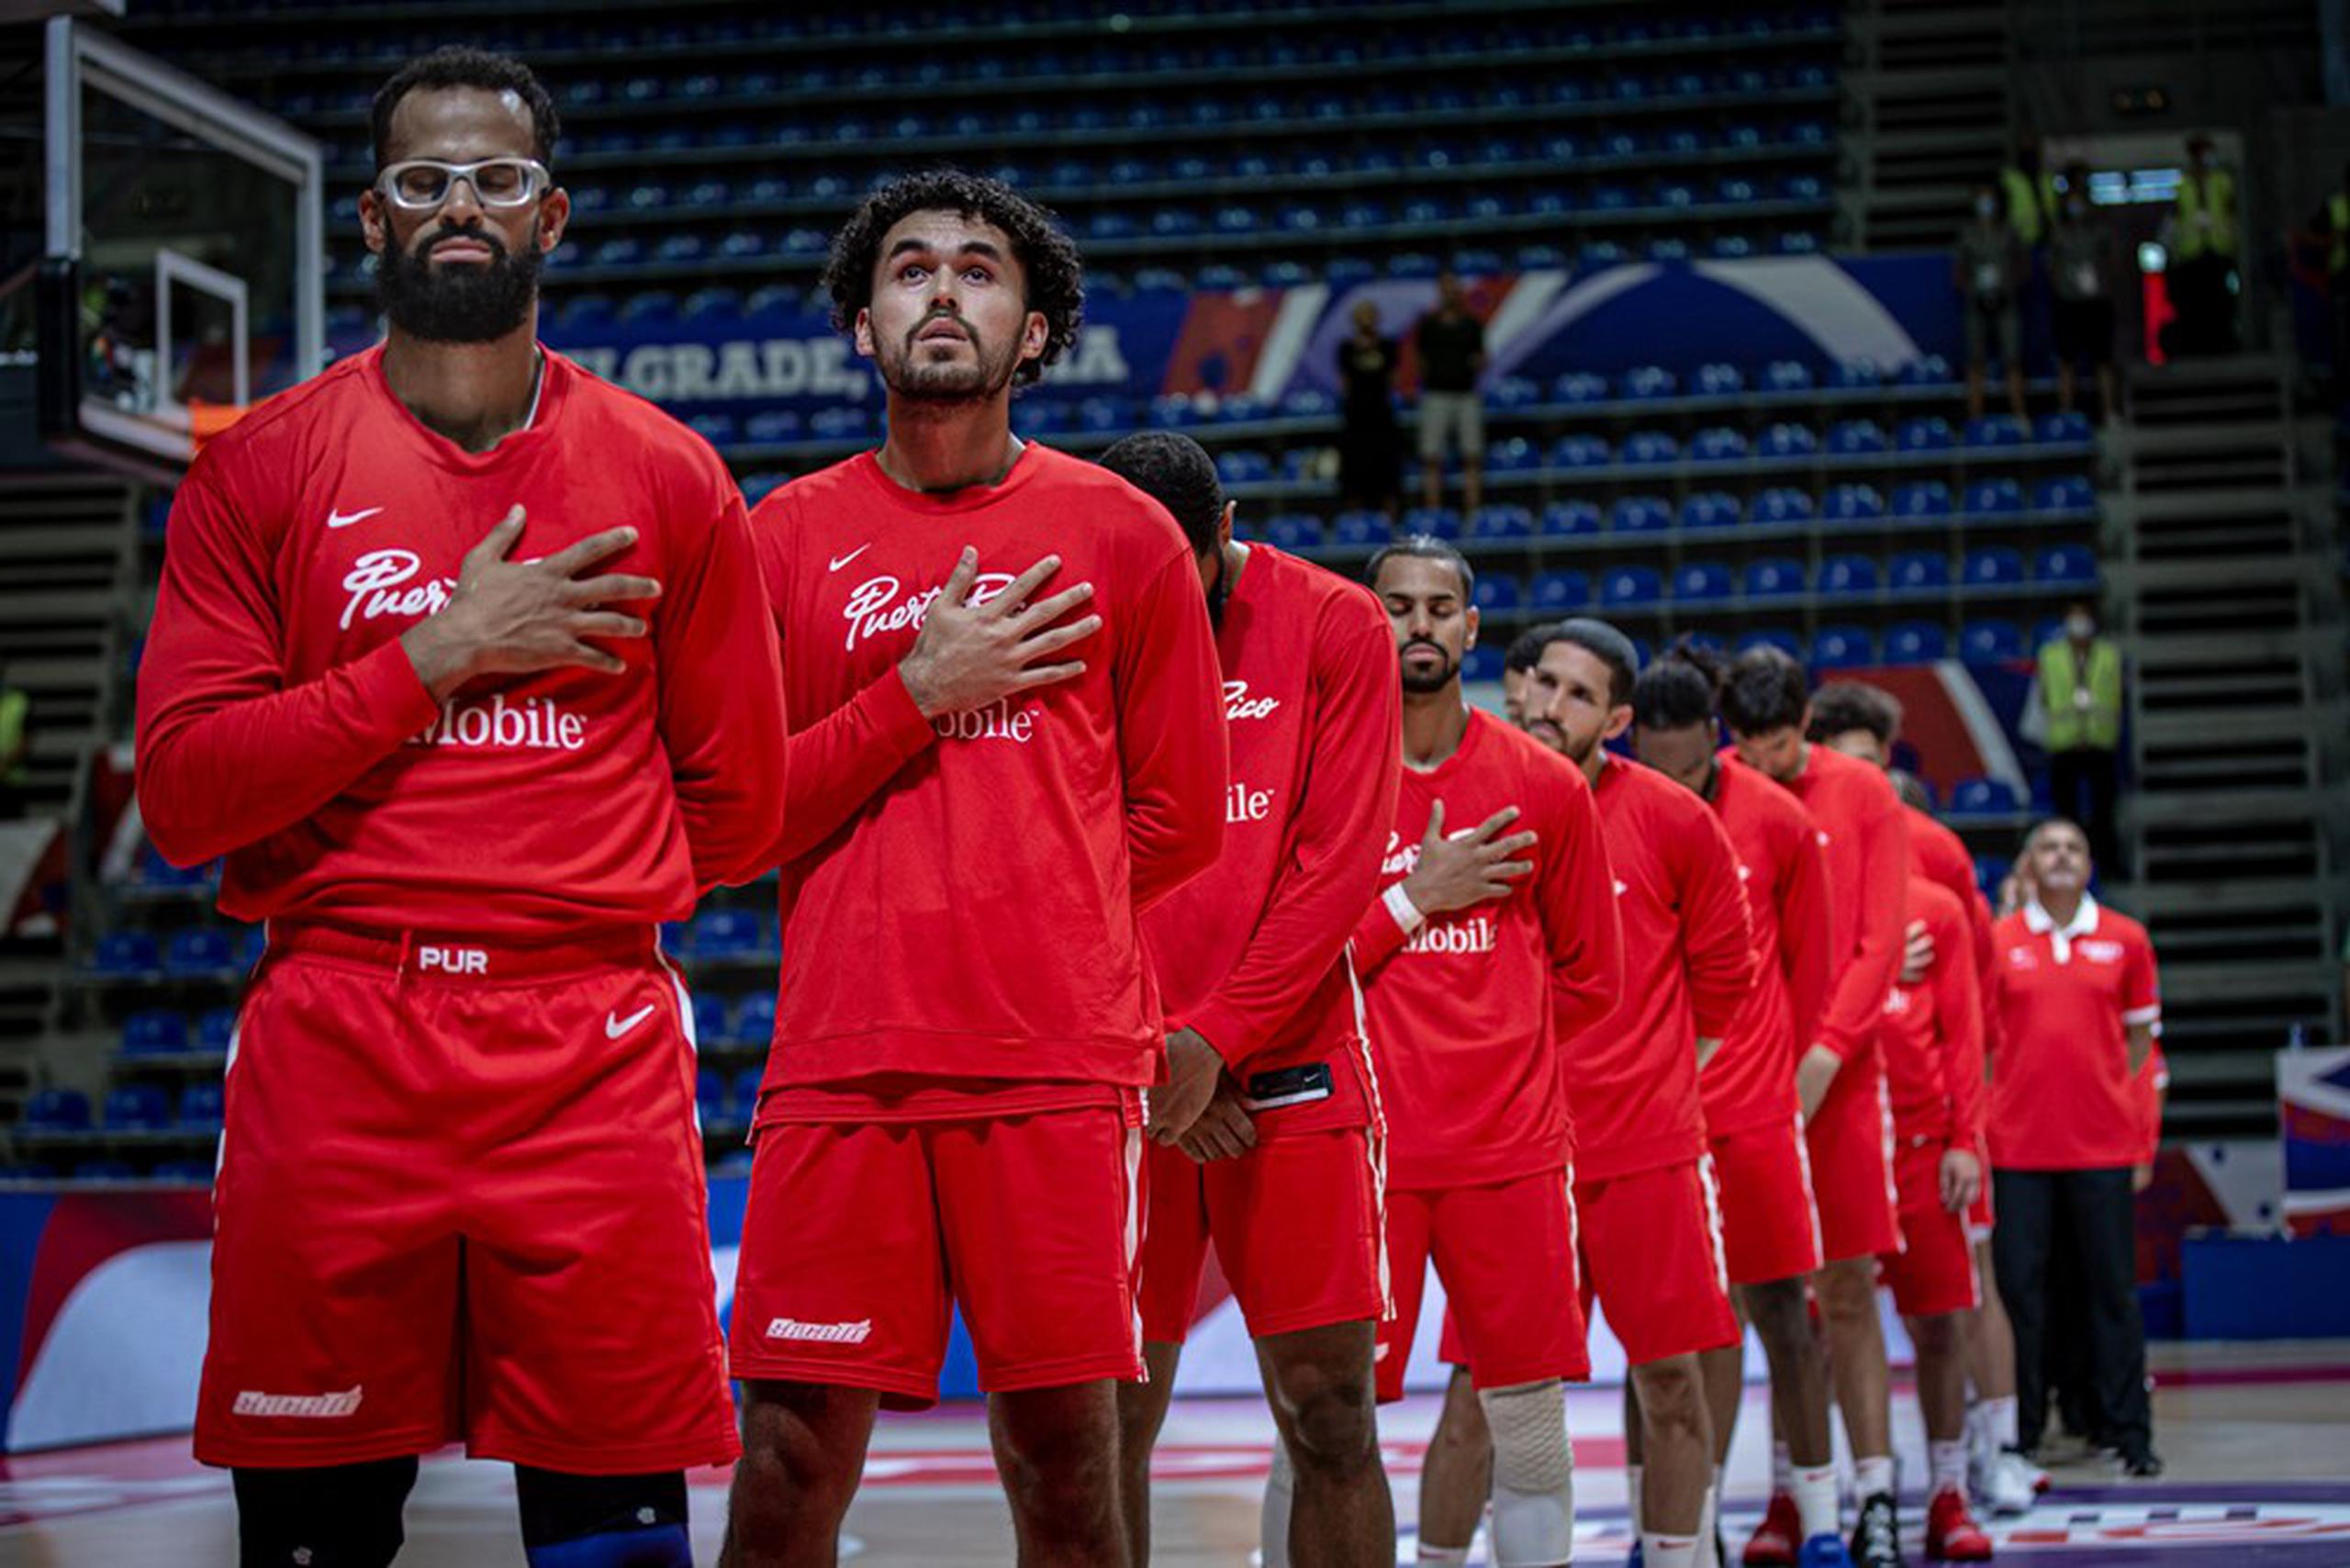 El Equipo Nacional de baloncesto aparece aquí escuchando el himno nacional de Puerto Rico antes de un partido en el Repechaje Olímpico 2021 en Serbia.